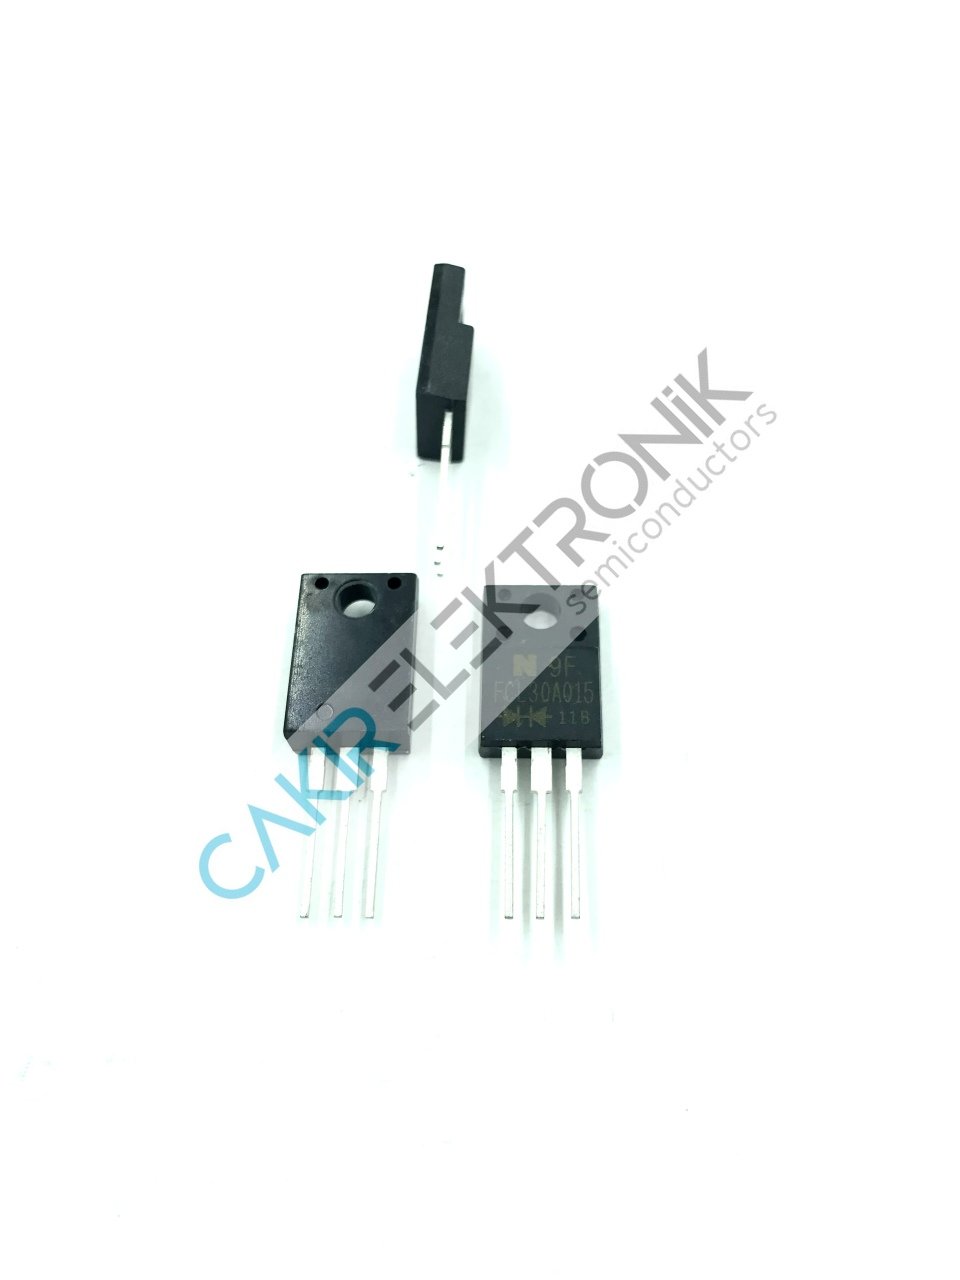 FCL30A015 -  TO220 - 15V. 2X10A - 100 V power Schottky rectifier